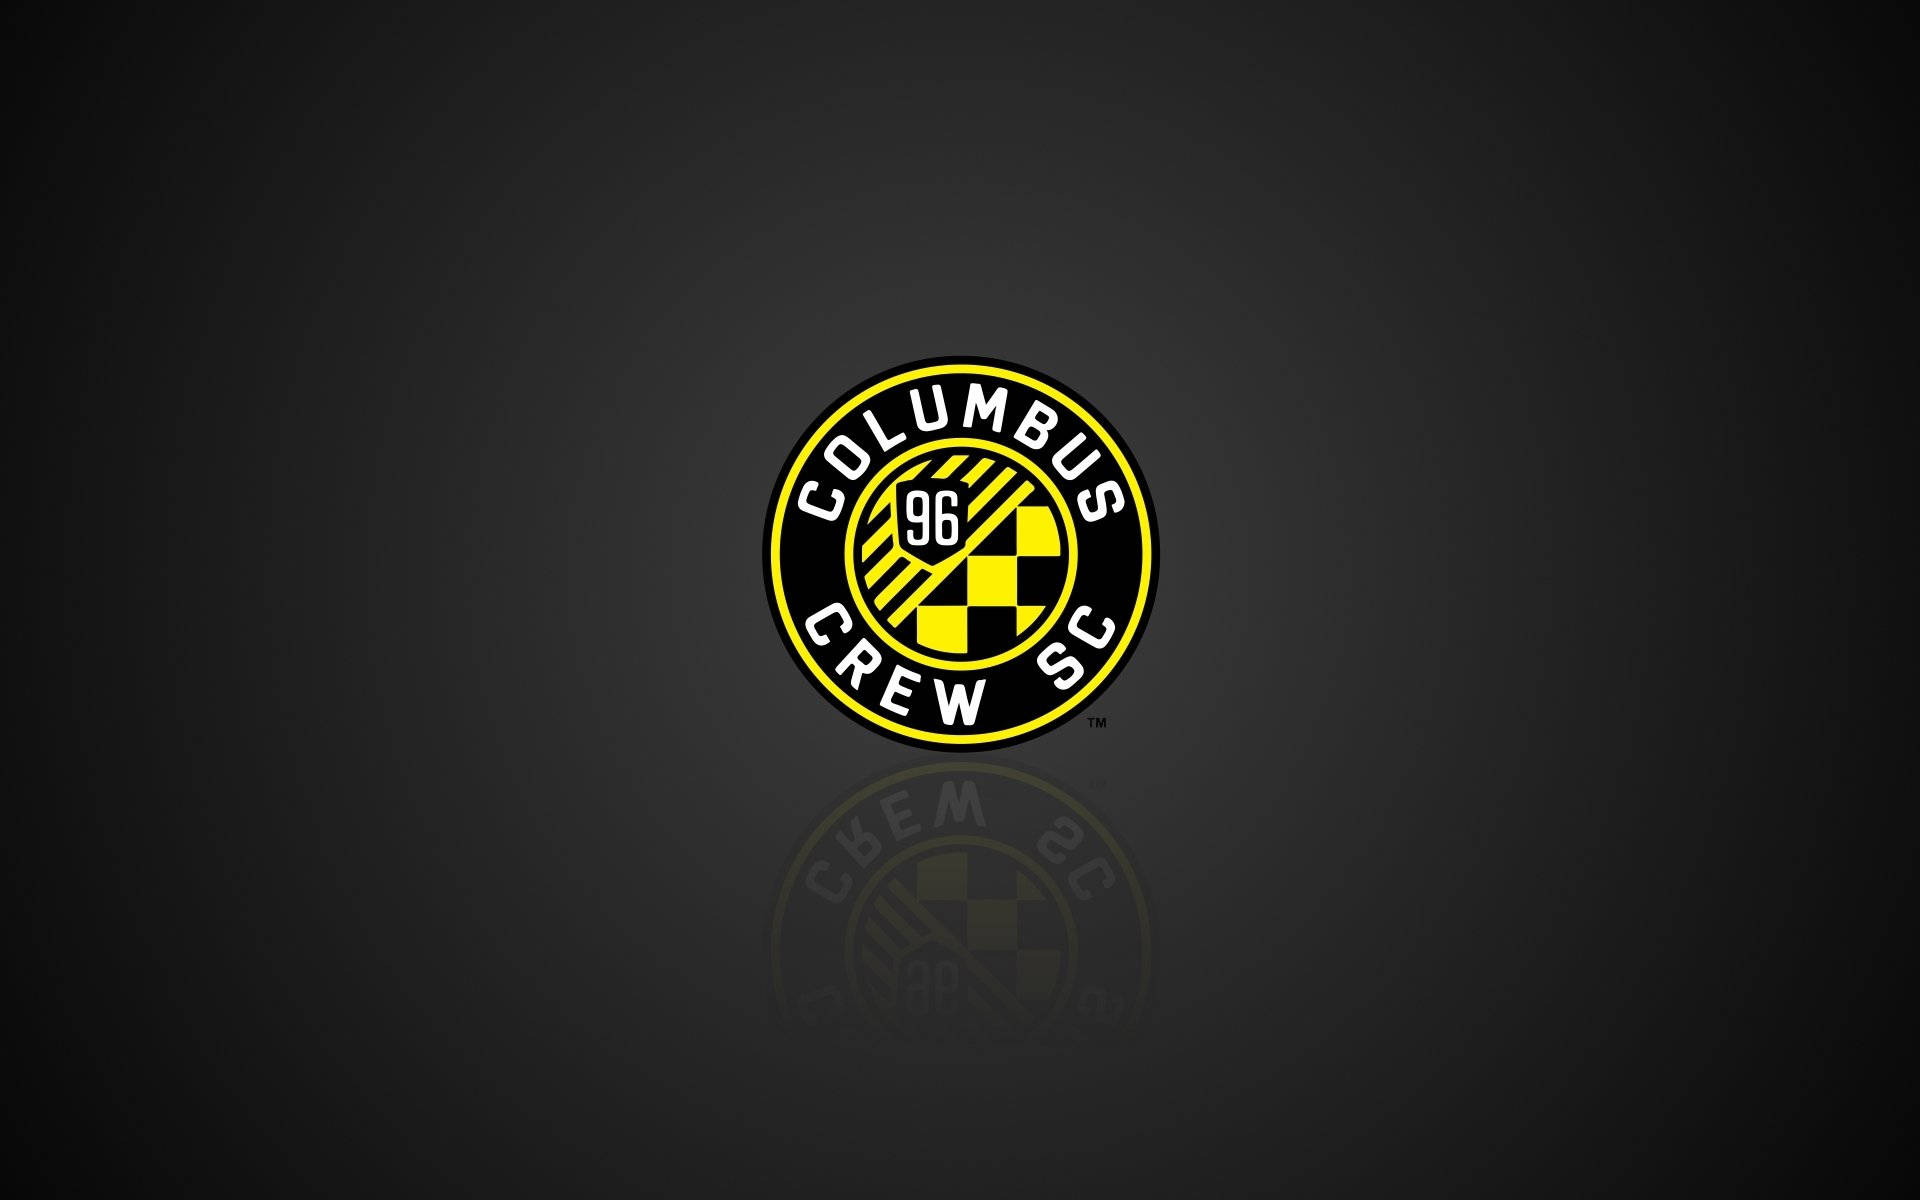 Columbuscrew Soccer Club-appar På Svart Bakgrund. Wallpaper